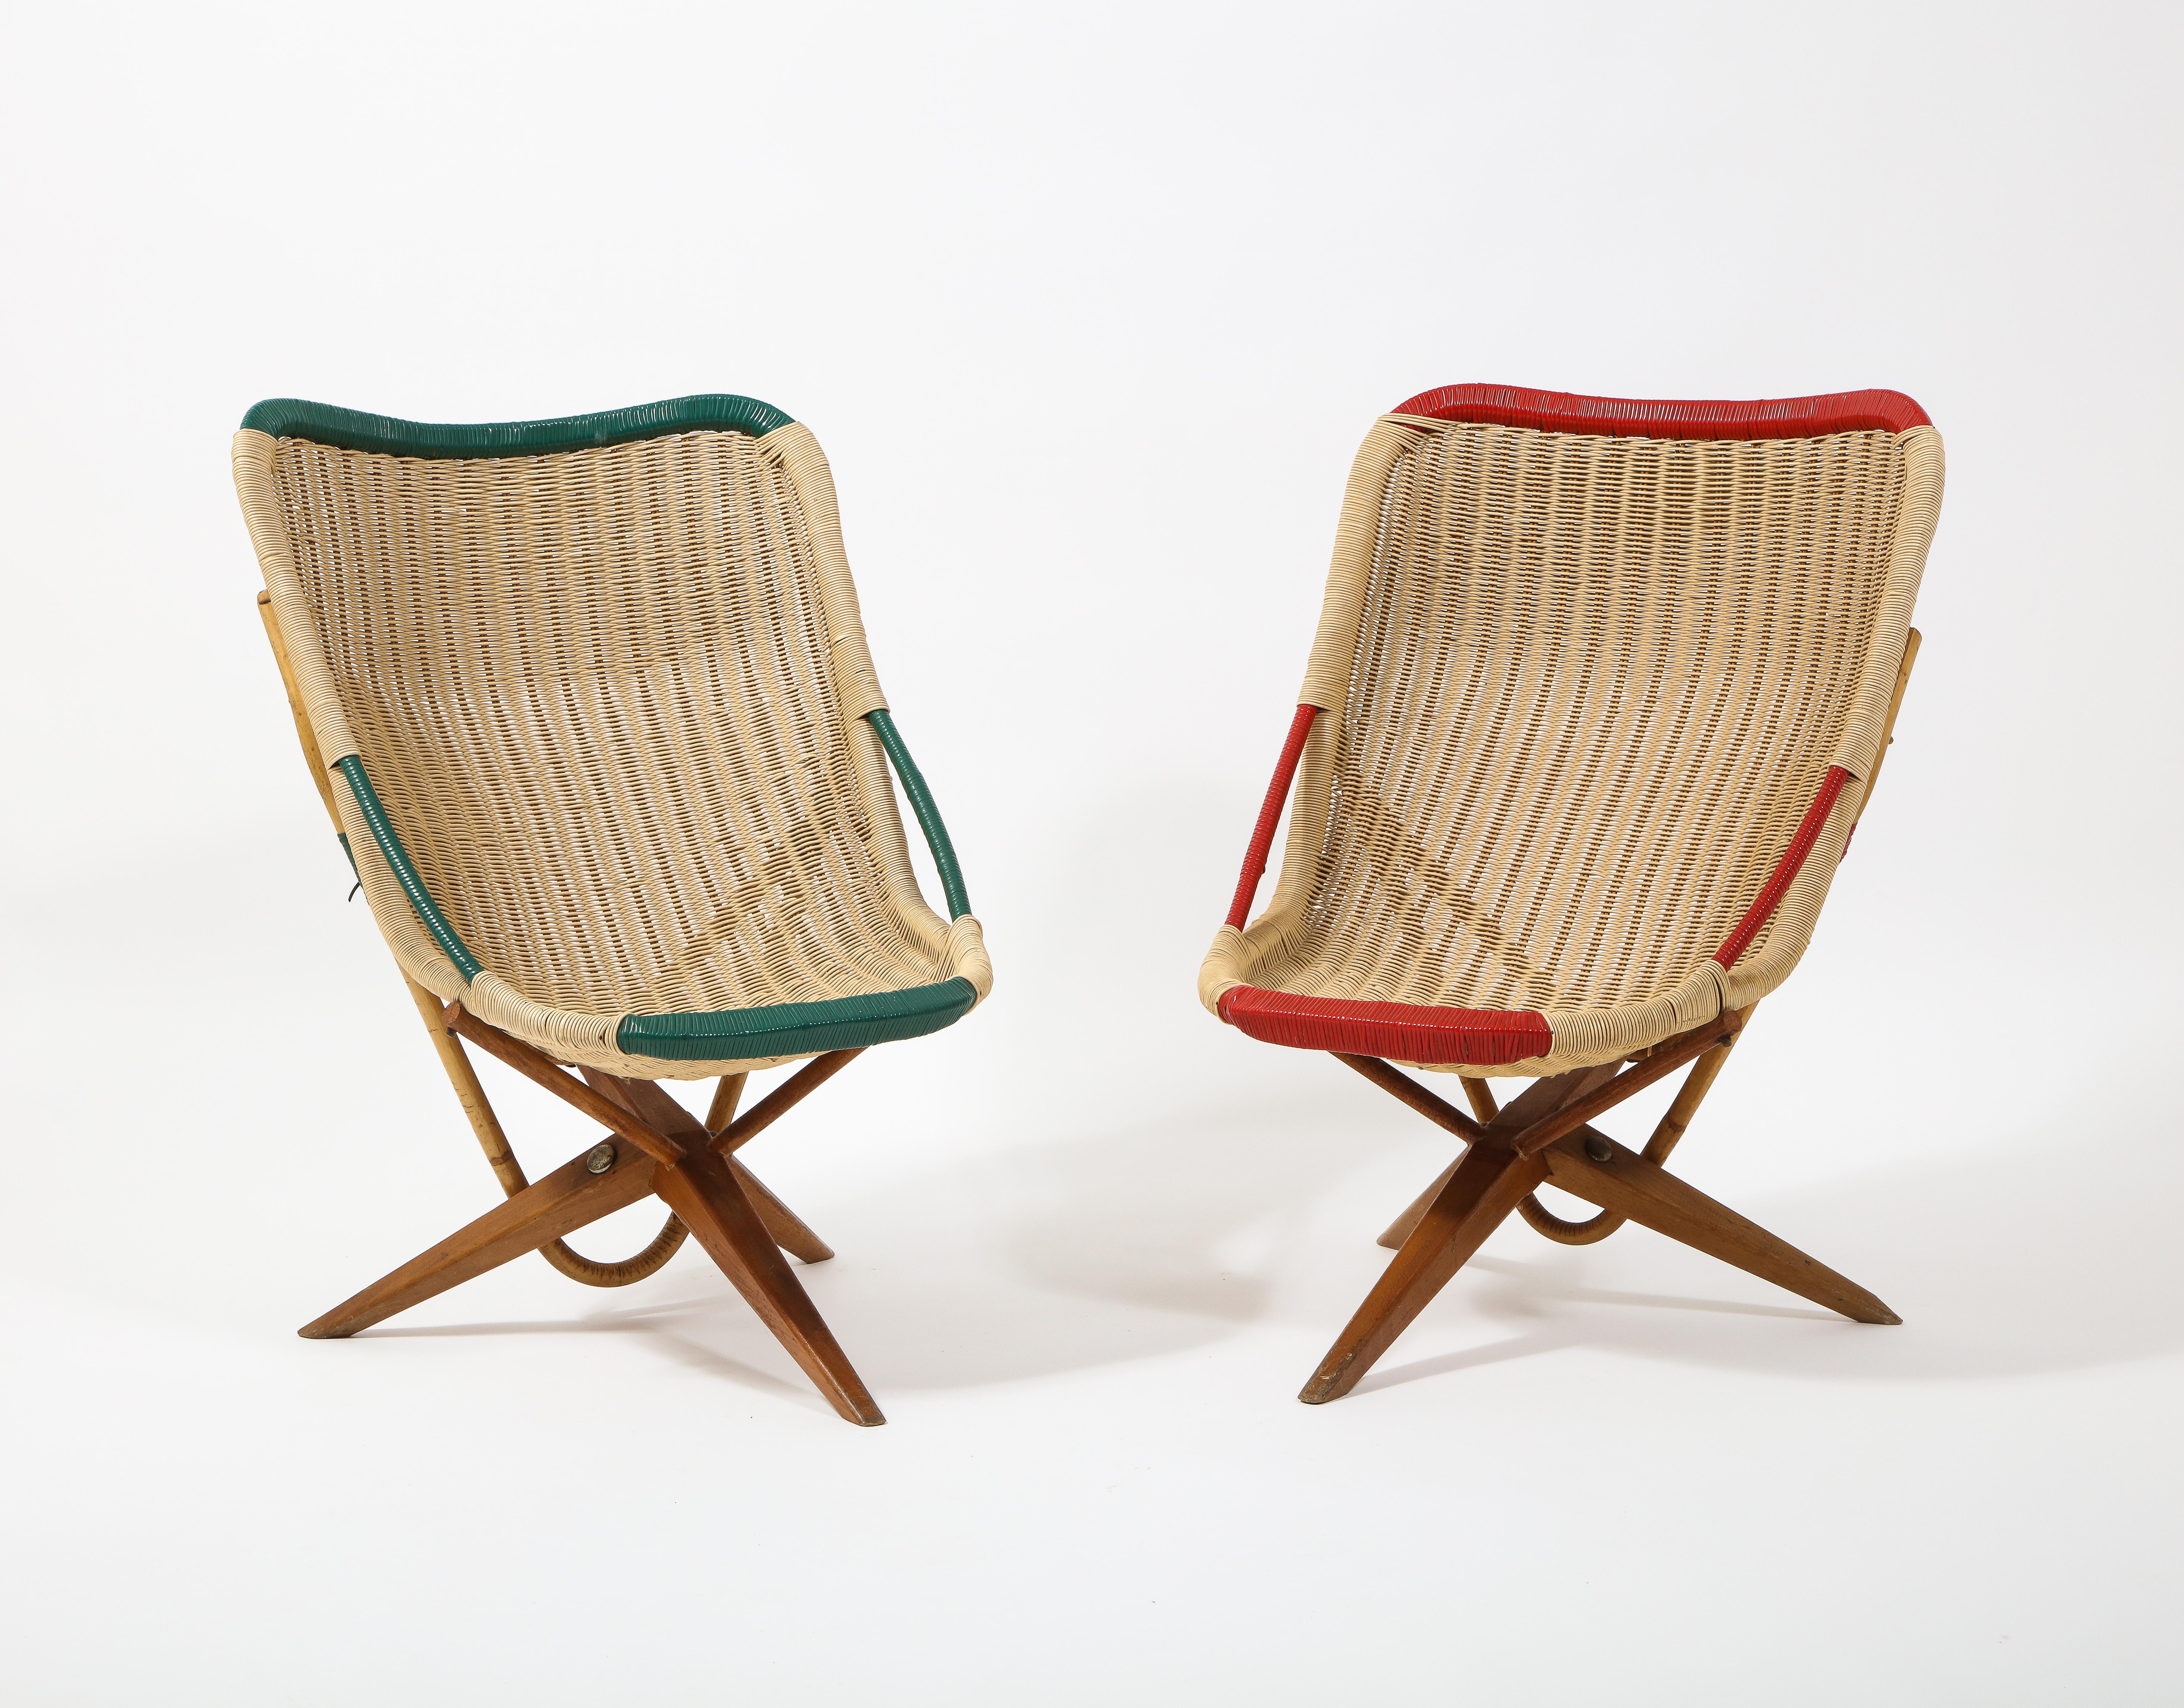 Paire de chaises Chistera en rotin sur pieds tripodes, dont le design rappelle la célèbre version de Motte. Nous ne savons pas lequel des deux est arrivé en premier, mais nous n'avons jamais vu ces chaises auparavant.